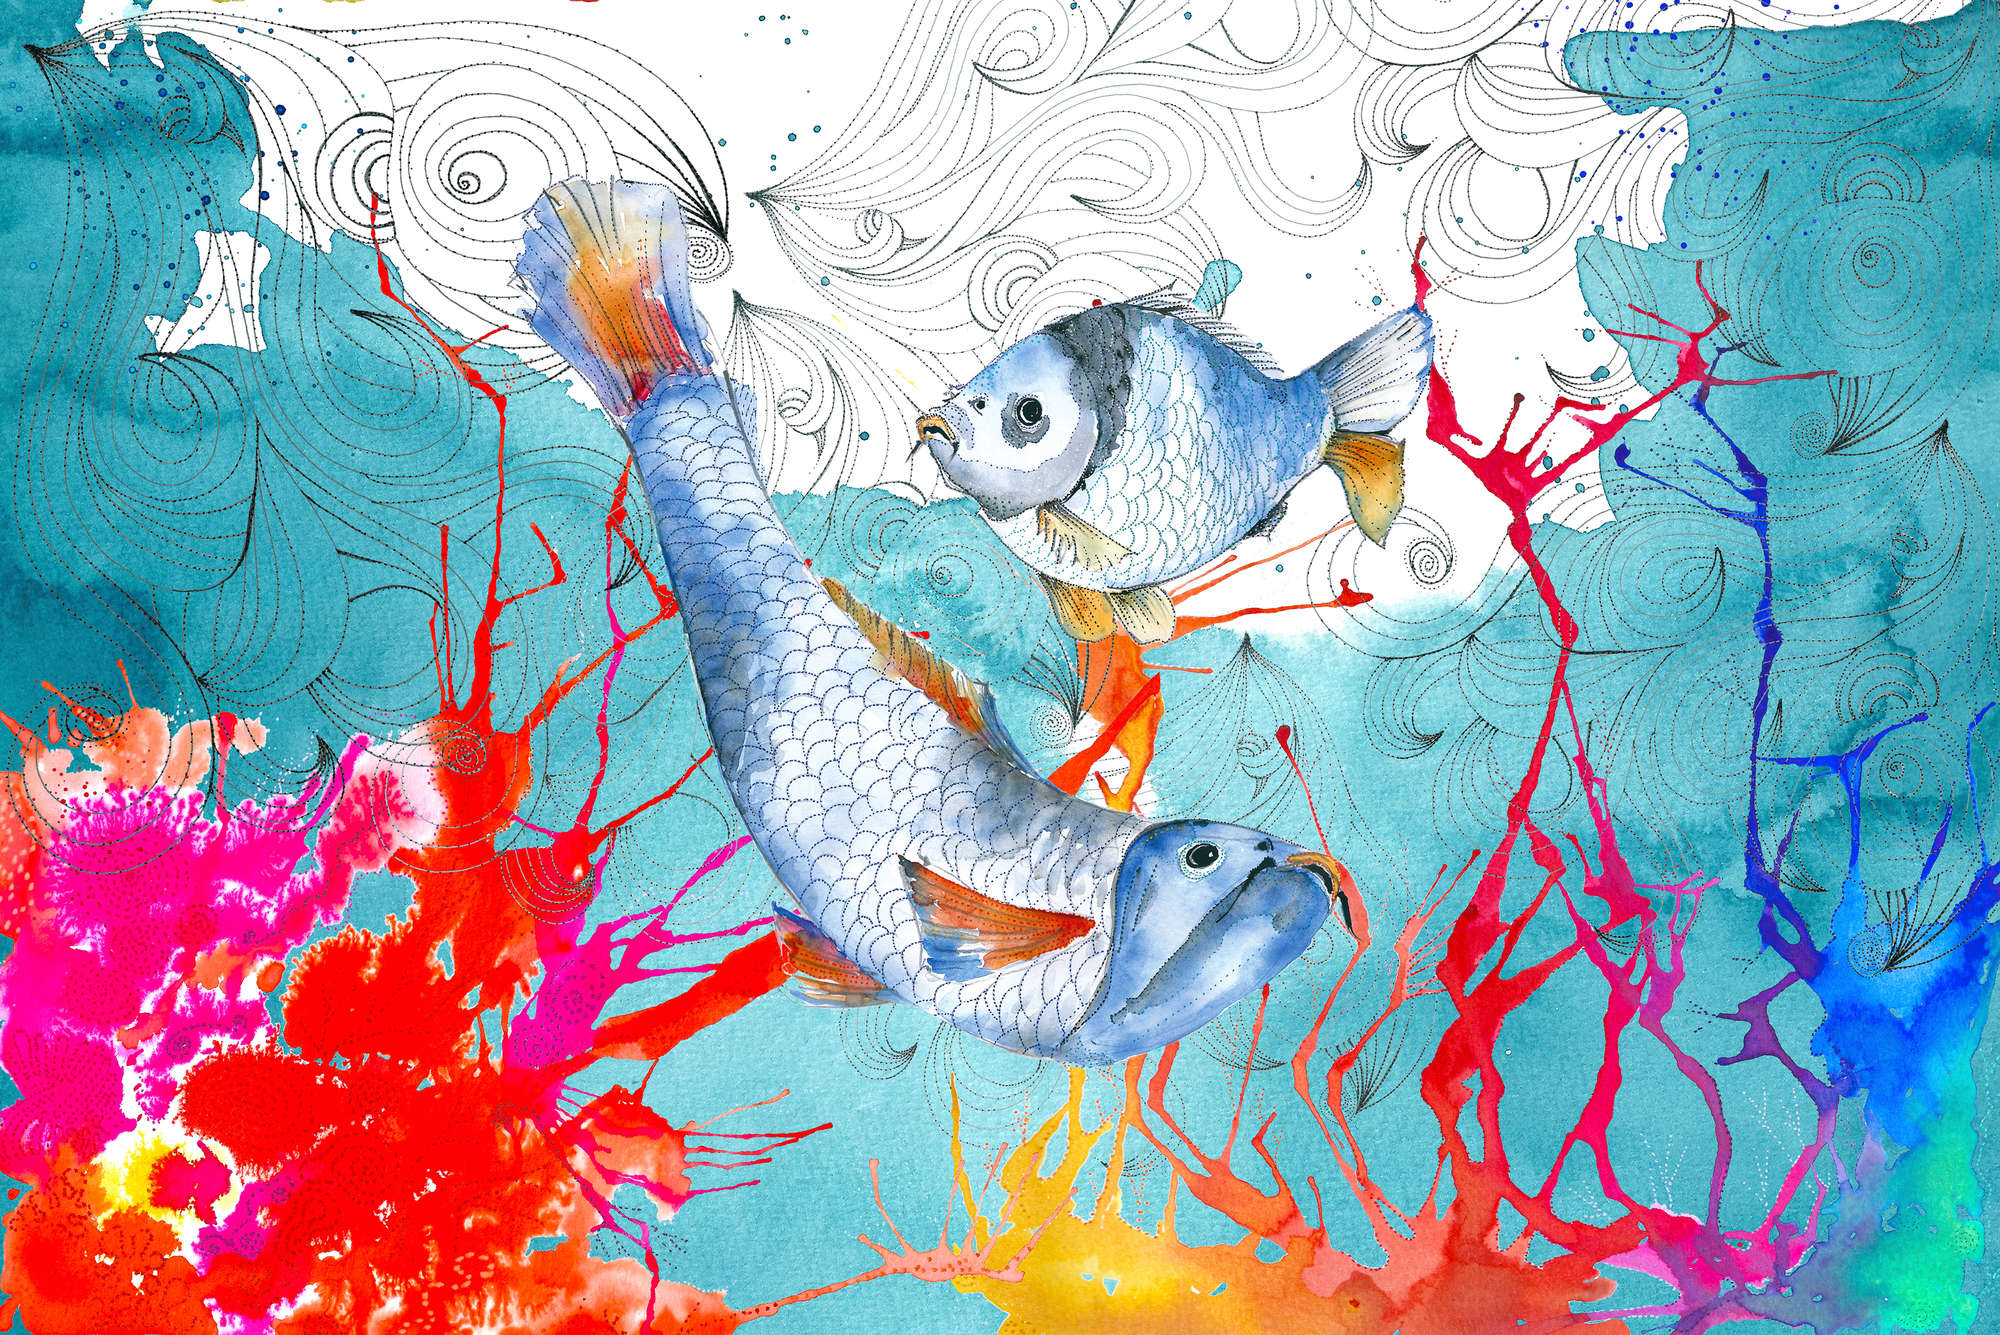             Papel pintado de acuarela con motivo de peces en azul y rosa sobre tejido no tejido texturizado
        